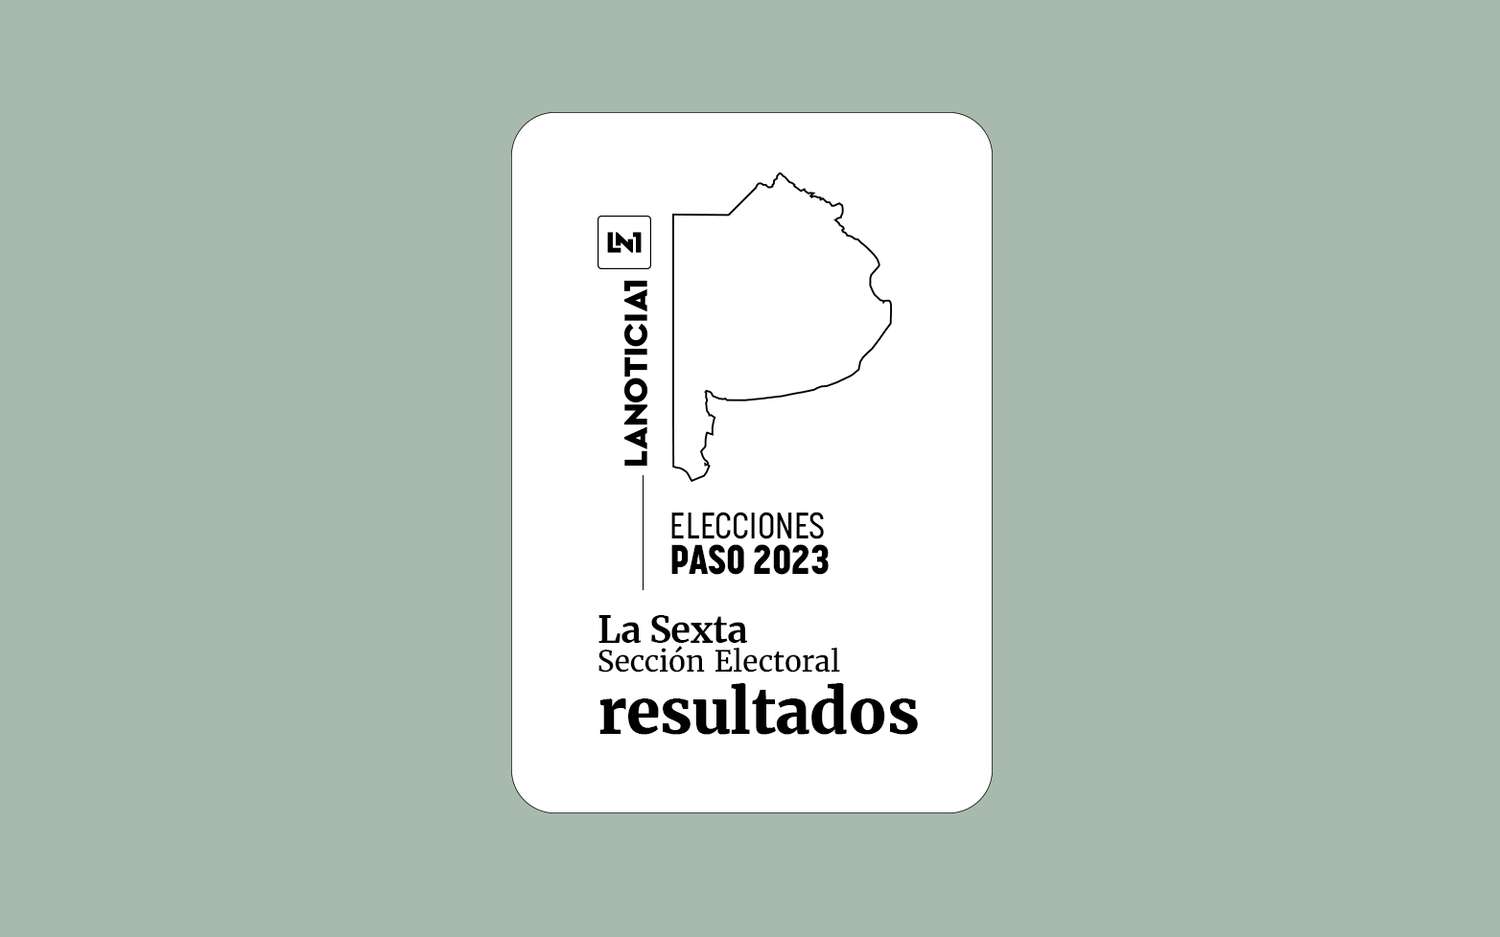 Elecciones PASO 2023: Resultados oficiales en la Sexta Sección Electoral